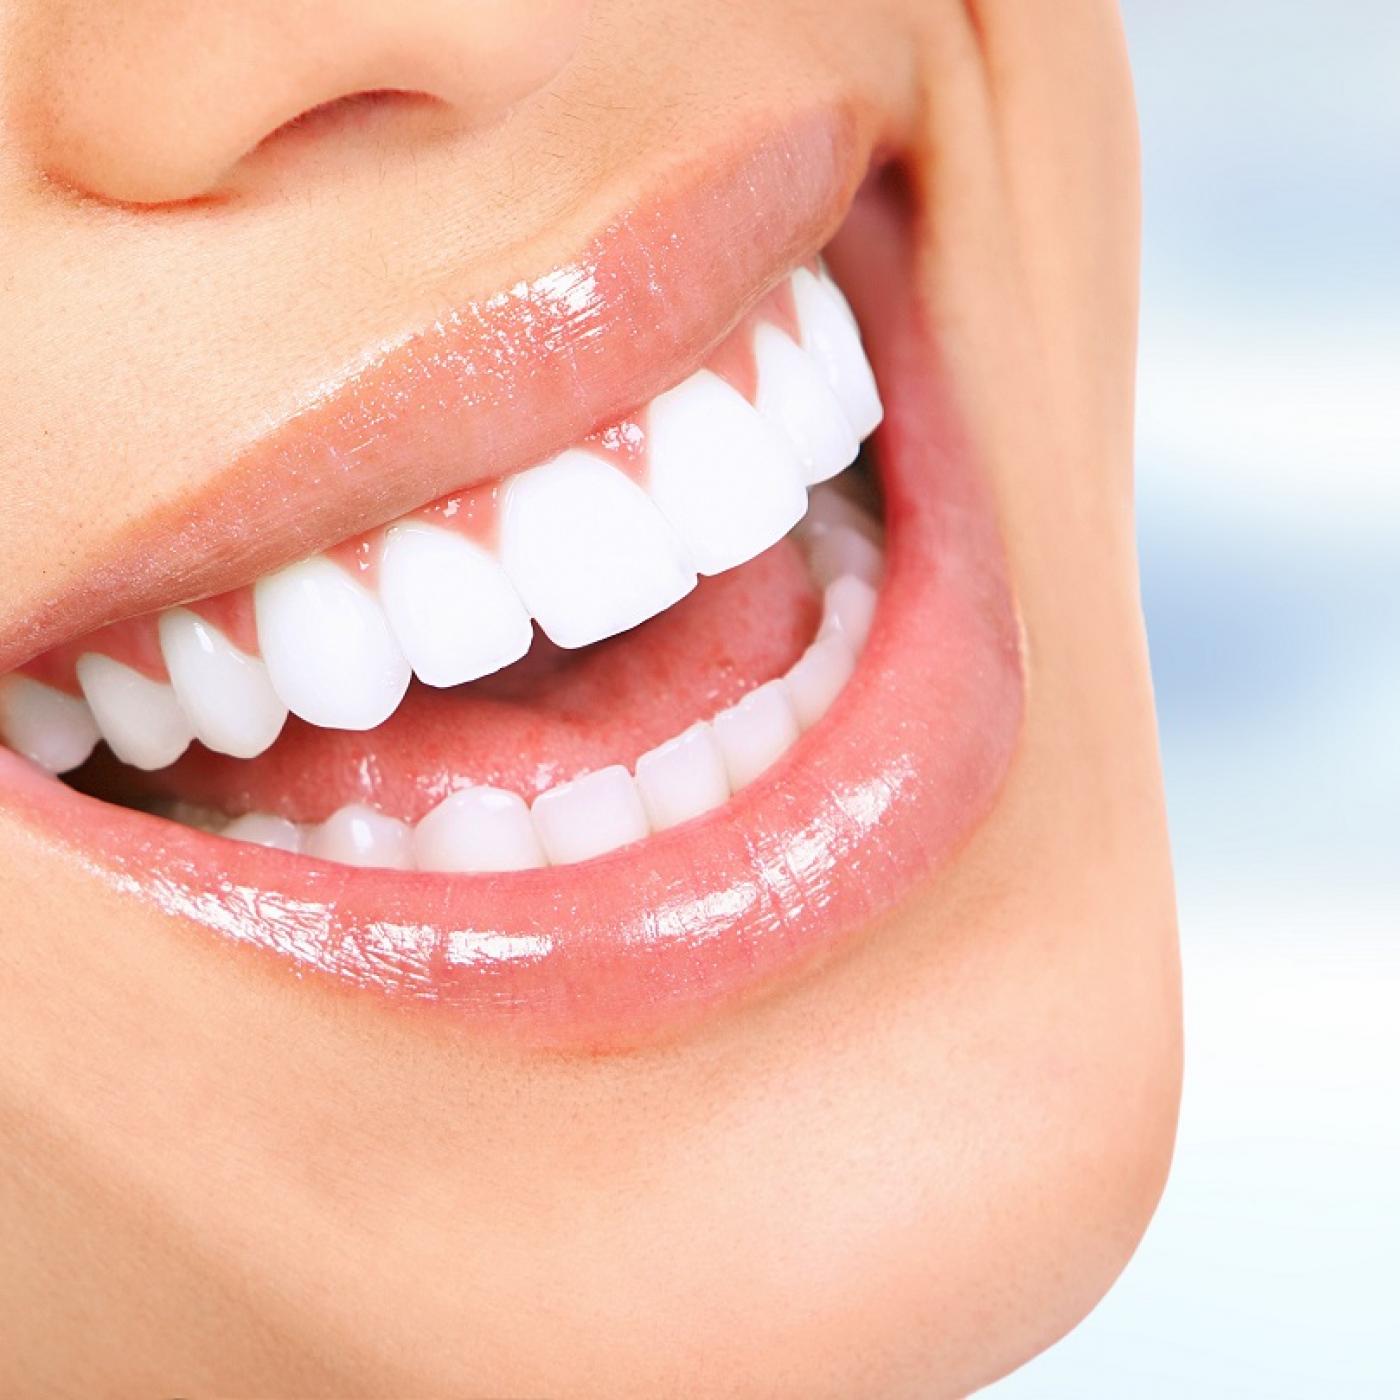 Le Journal des Bonnes Nouvelles : Comment avoir les dents plus blanches ?